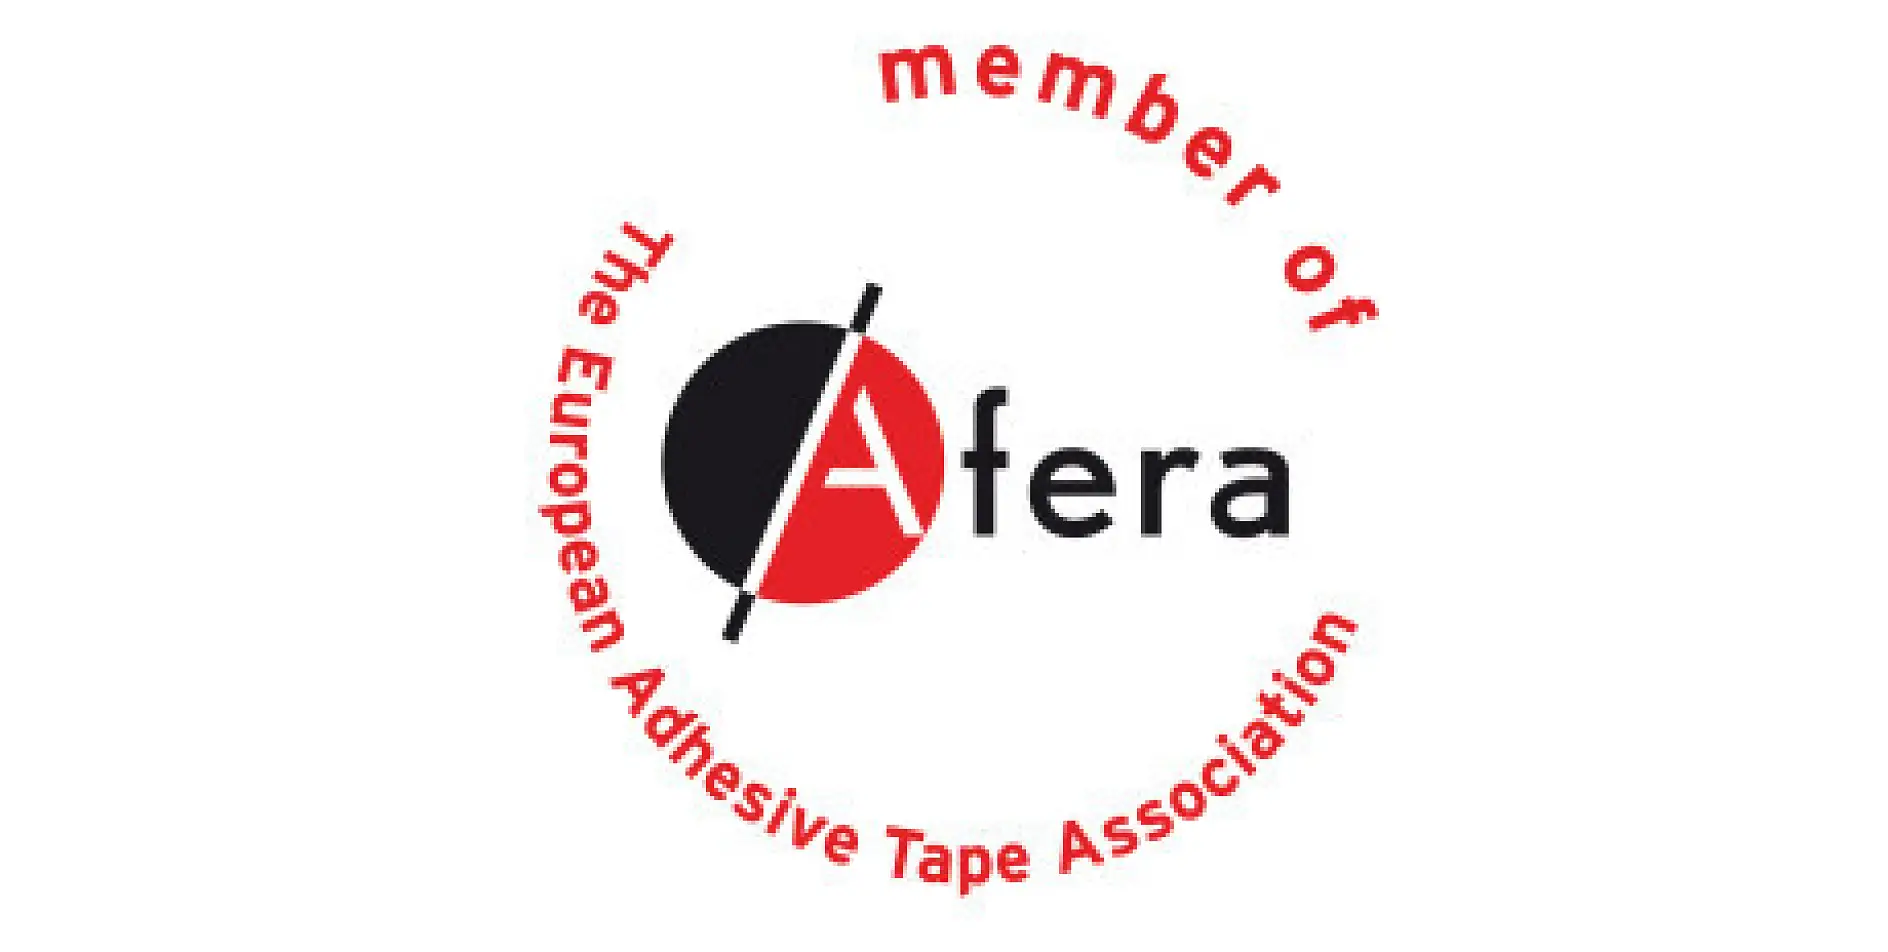 tesa is lid van afera - de Europese branchevereniging voor zelfklevende tapes. Tot de leden behoren fabrikanten, leveranciers van grondstoffen en machines, verwerkende producenten (zoals drukkers, snijders, die-cutters en laminators van zelfklevende tape) en nationale tapeorganisaties.